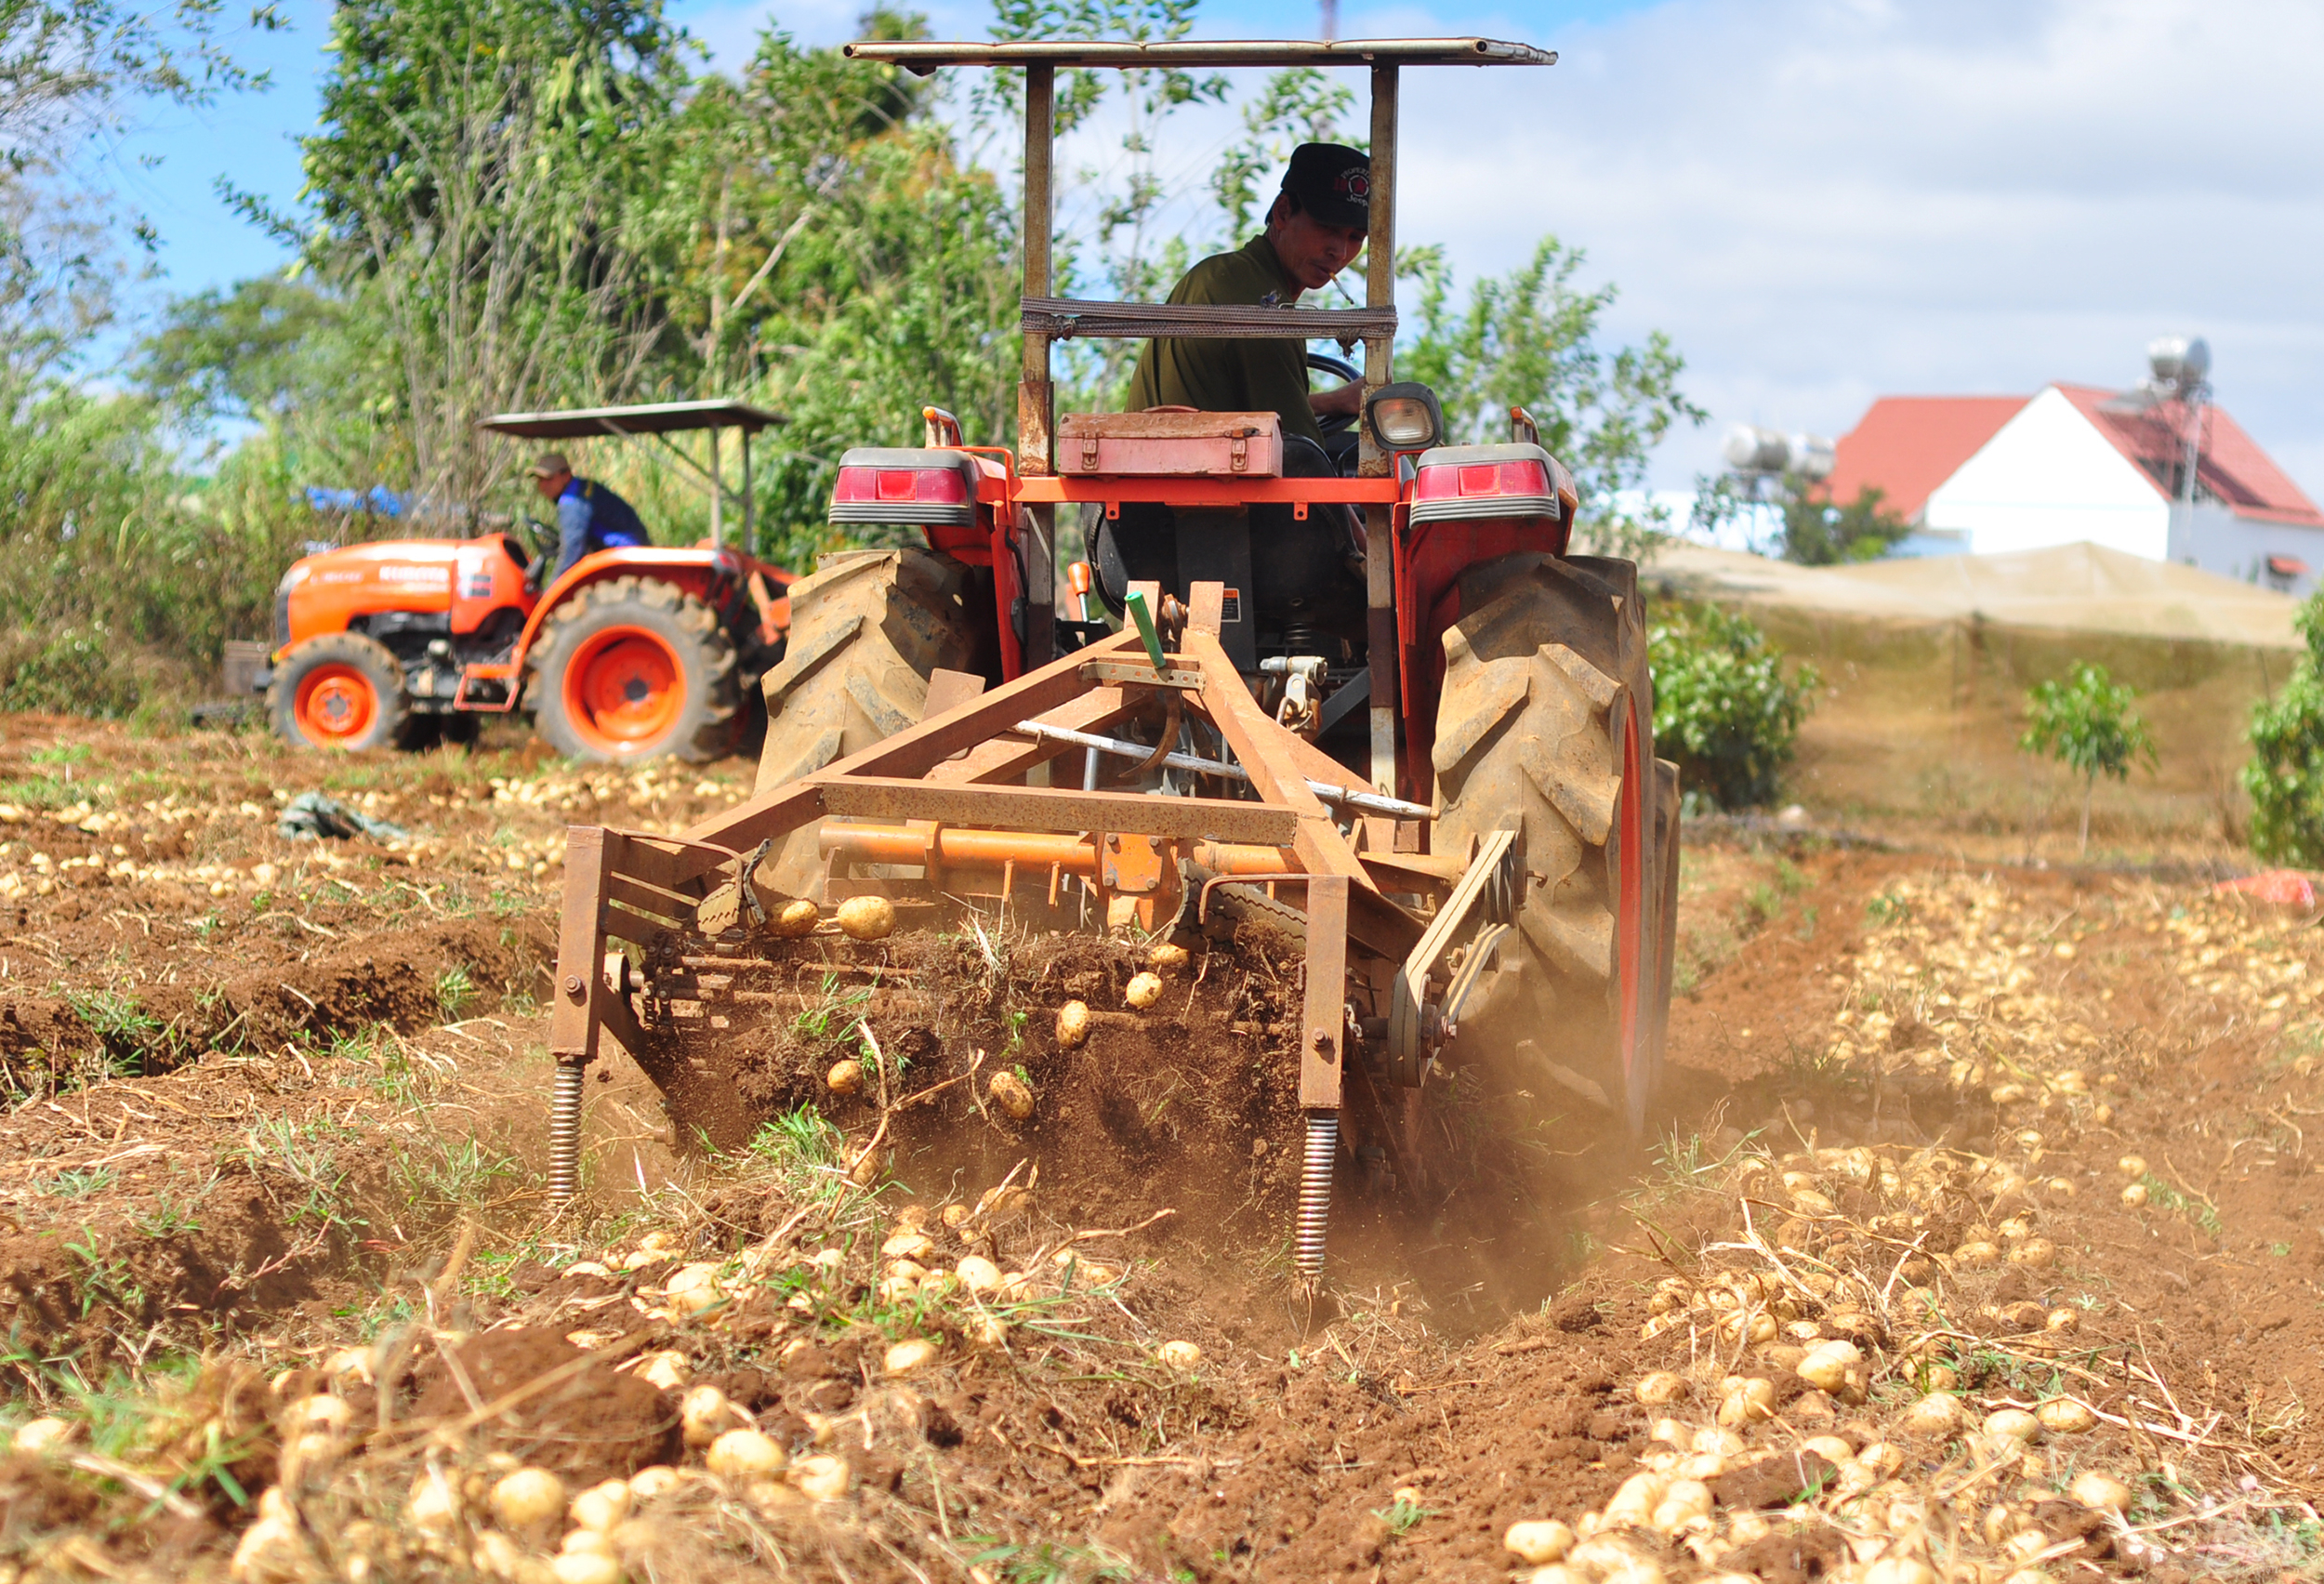 Mô hình khoai tây vàng được gia đình anh Trần Minh Tâm, ngụ xã Quảng Lập (huyện Đơn Dương, Lâm Đồng) áp dụng sản xuất nhiều năm qua. Hiện nay, gia đình đã liên kết với doanh nghiệp chế biến nông sản có trụ sở ở Đà Lạt để nâng cao hiệu quả . 